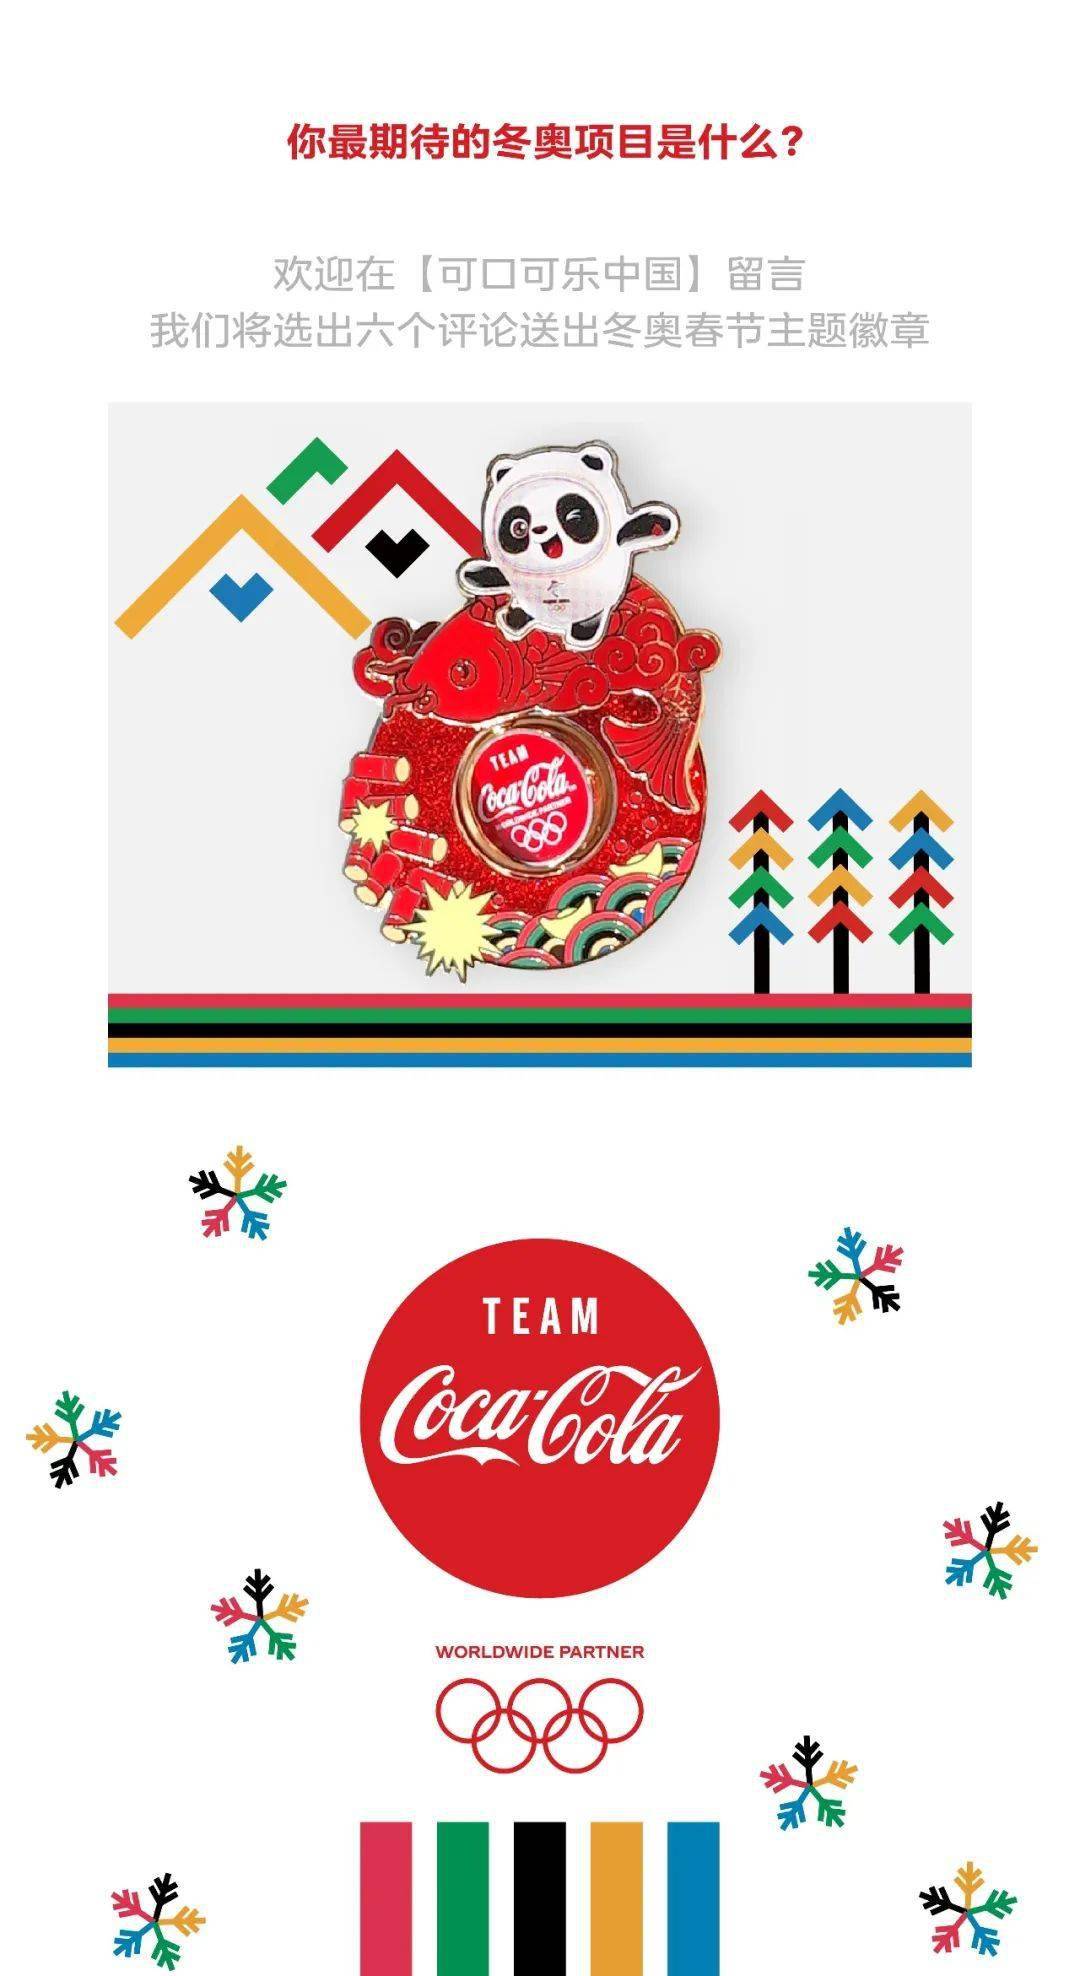 红包封面来了可口可乐中国x北京2022年冬奥会